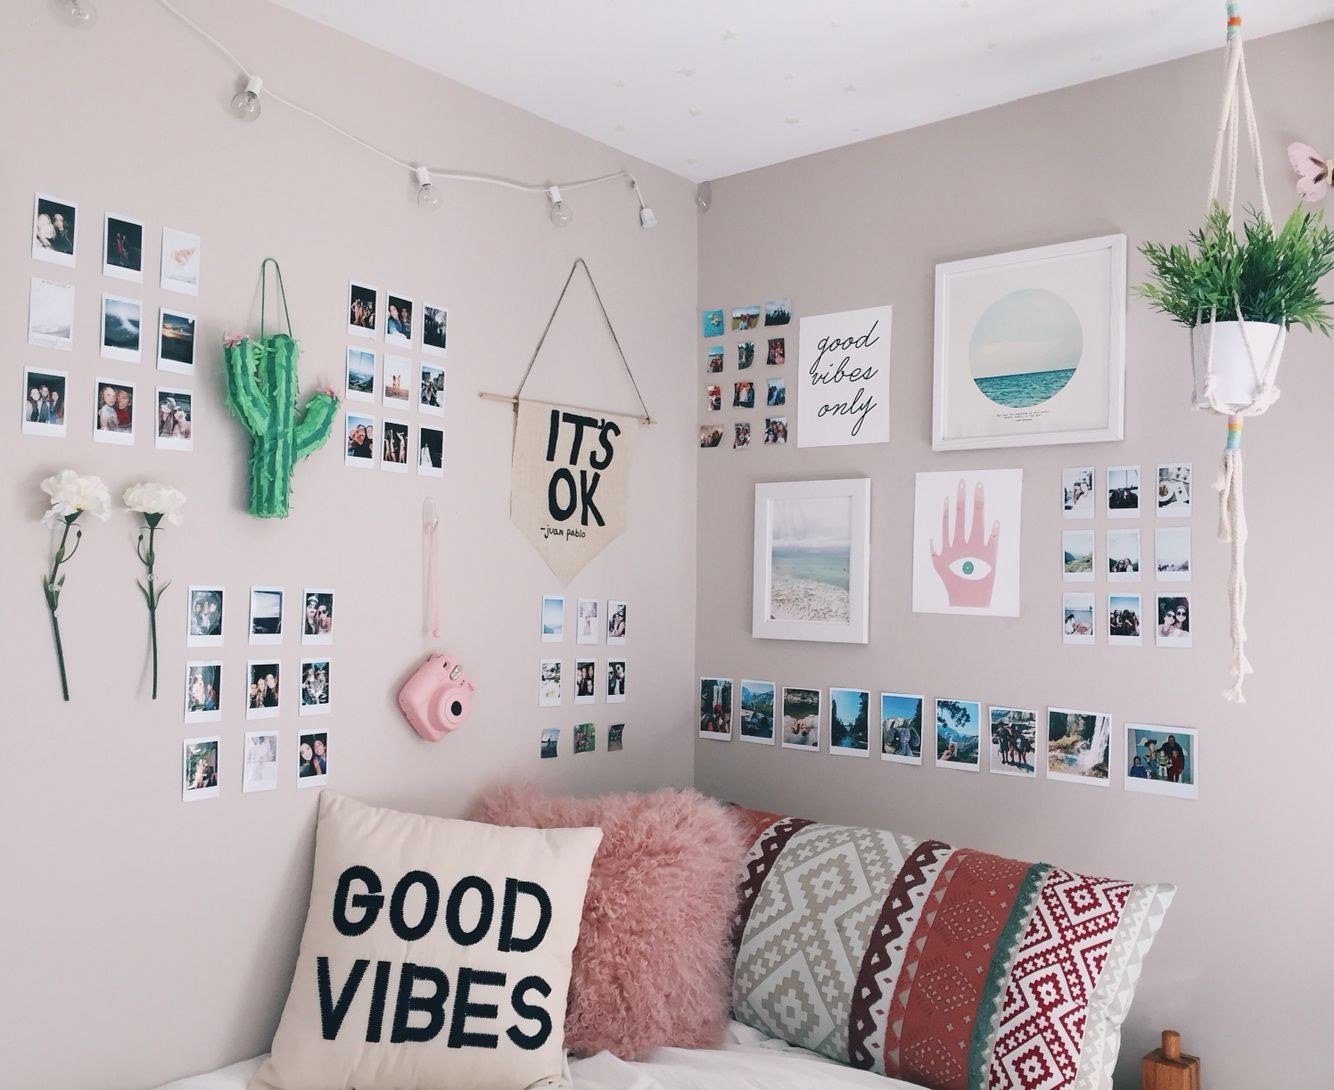 DIY декор комнаты своим руками из цветной бумаги легко. Как украсить своими руками комнату